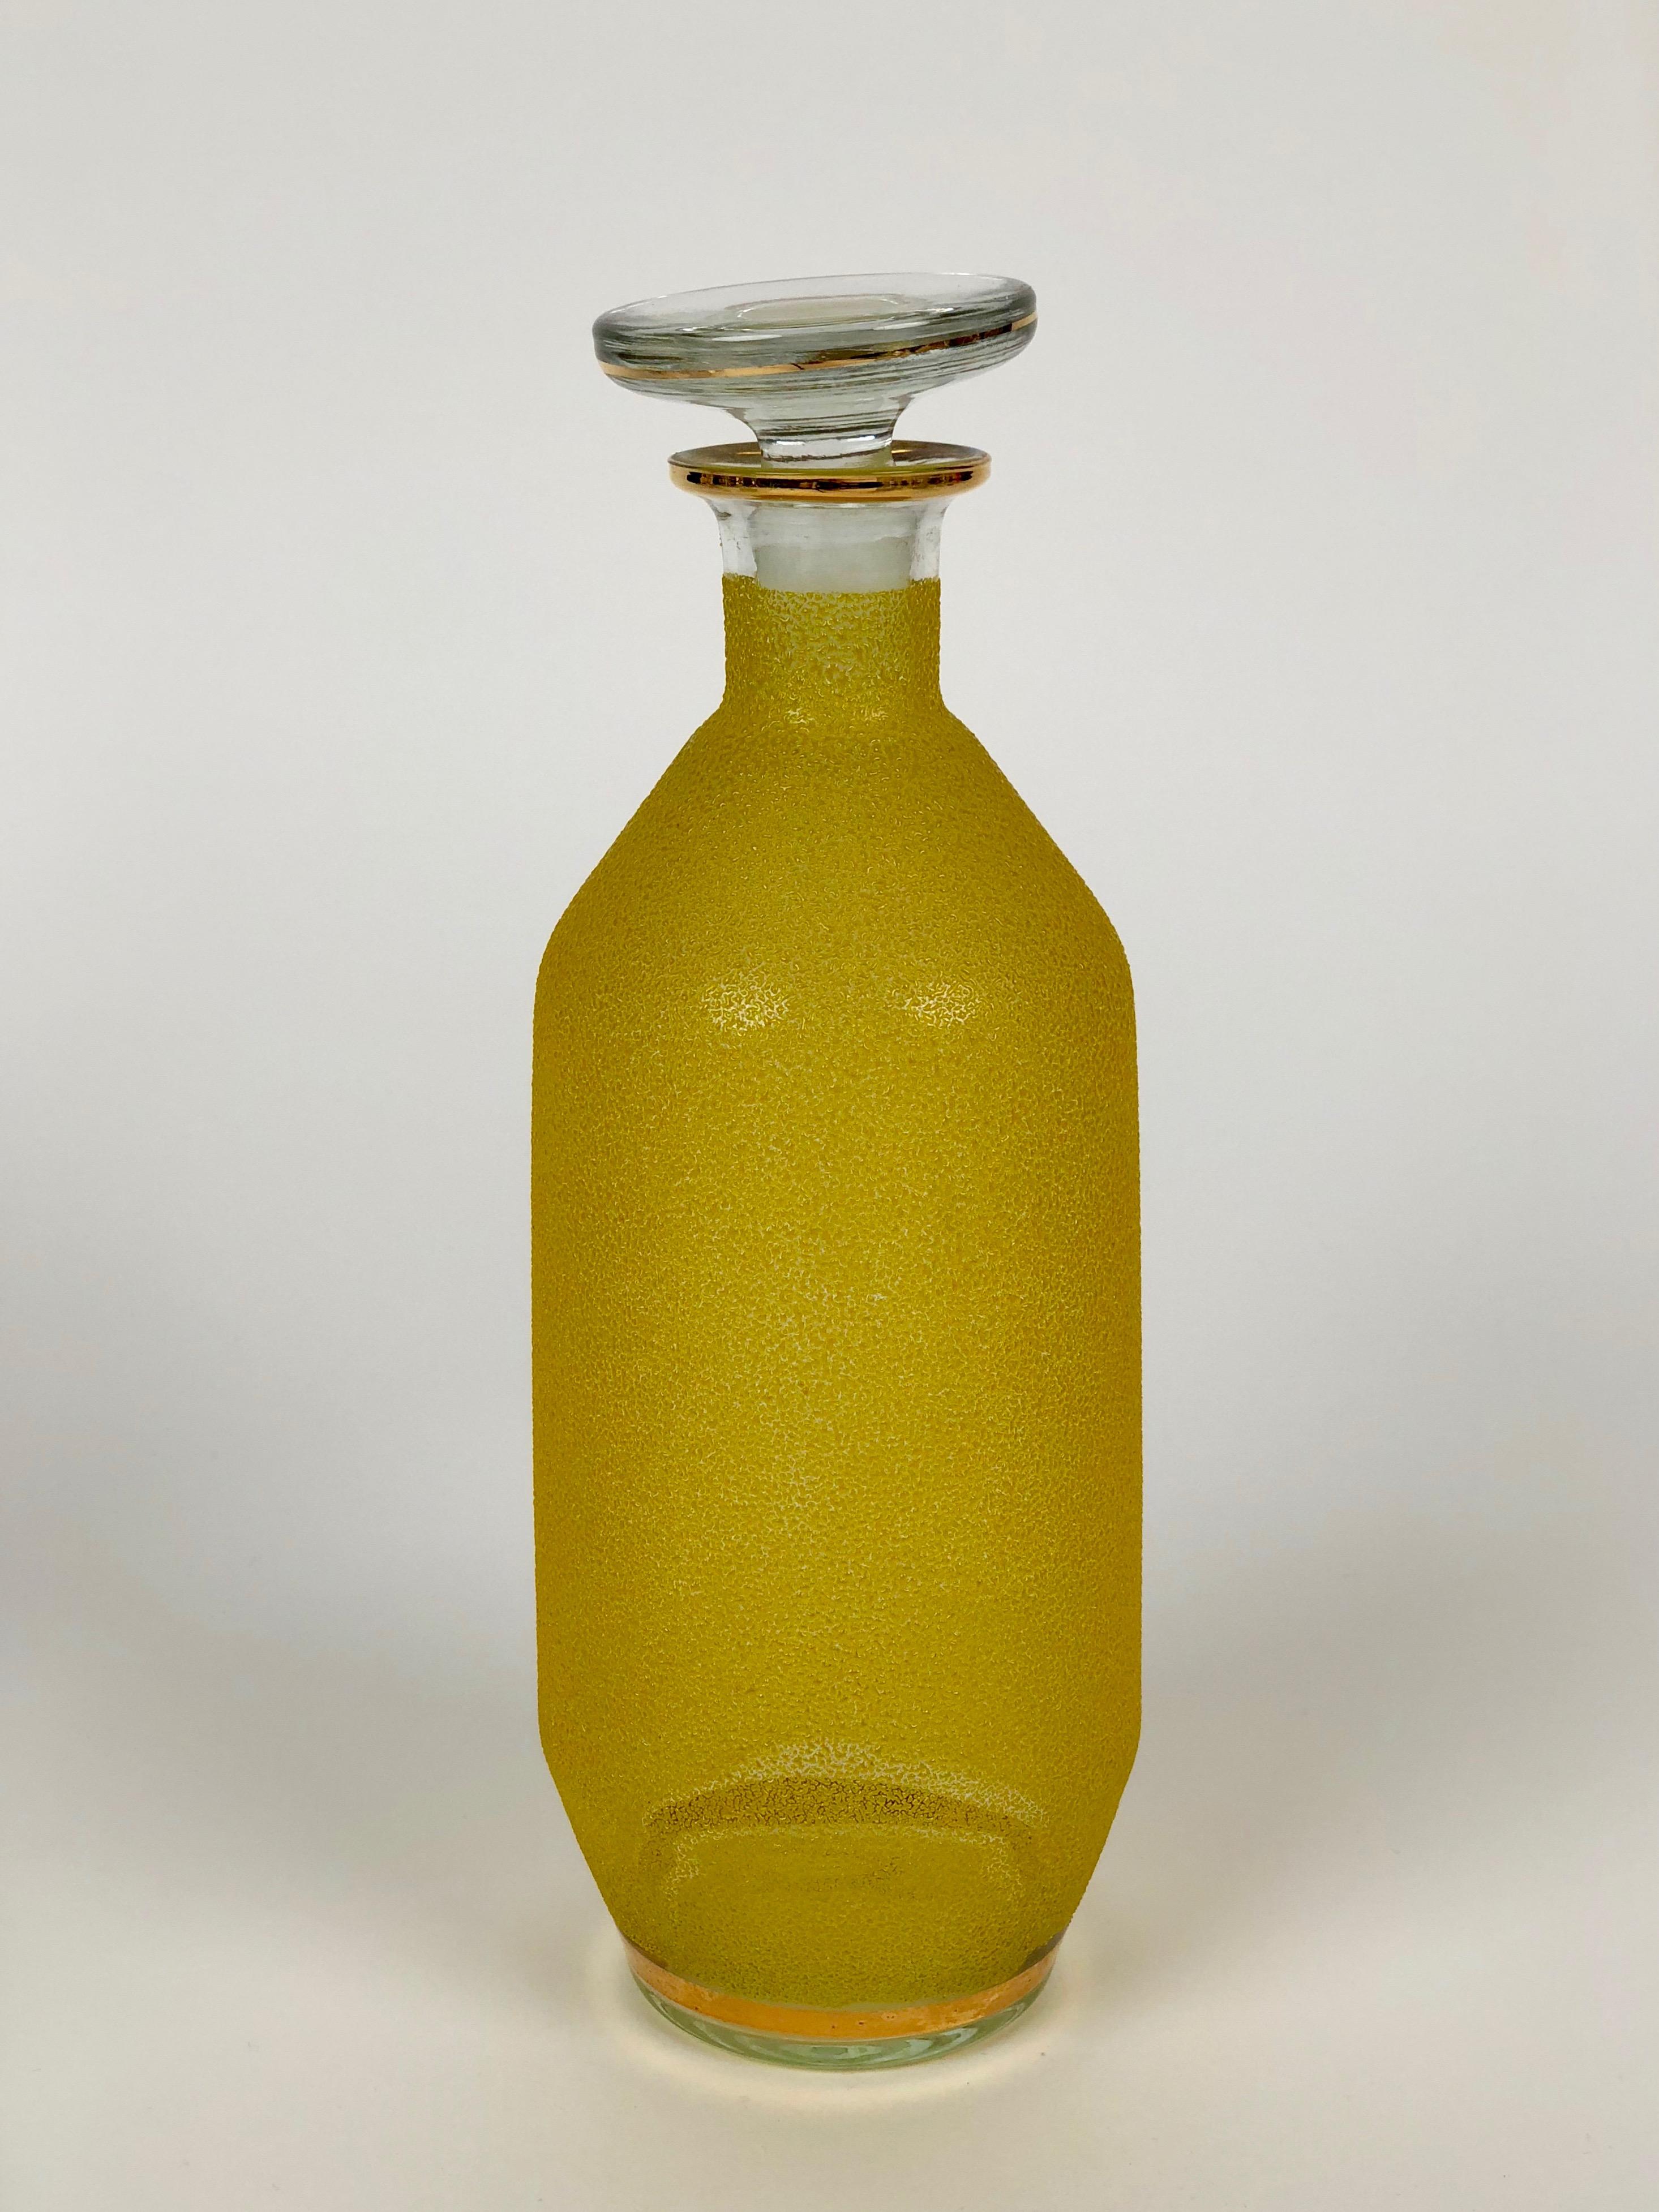 Glaskaraffe aus der Jahrhundertmitte mit gelbem Glasdekor und goldenen Streifen.
Die Farbe besteht aus farbigen Glaspartikeln, die an einem Glaskörper befestigt sind.

Sie können es für Likör oder als kreative Alternative für Öle verwenden
und